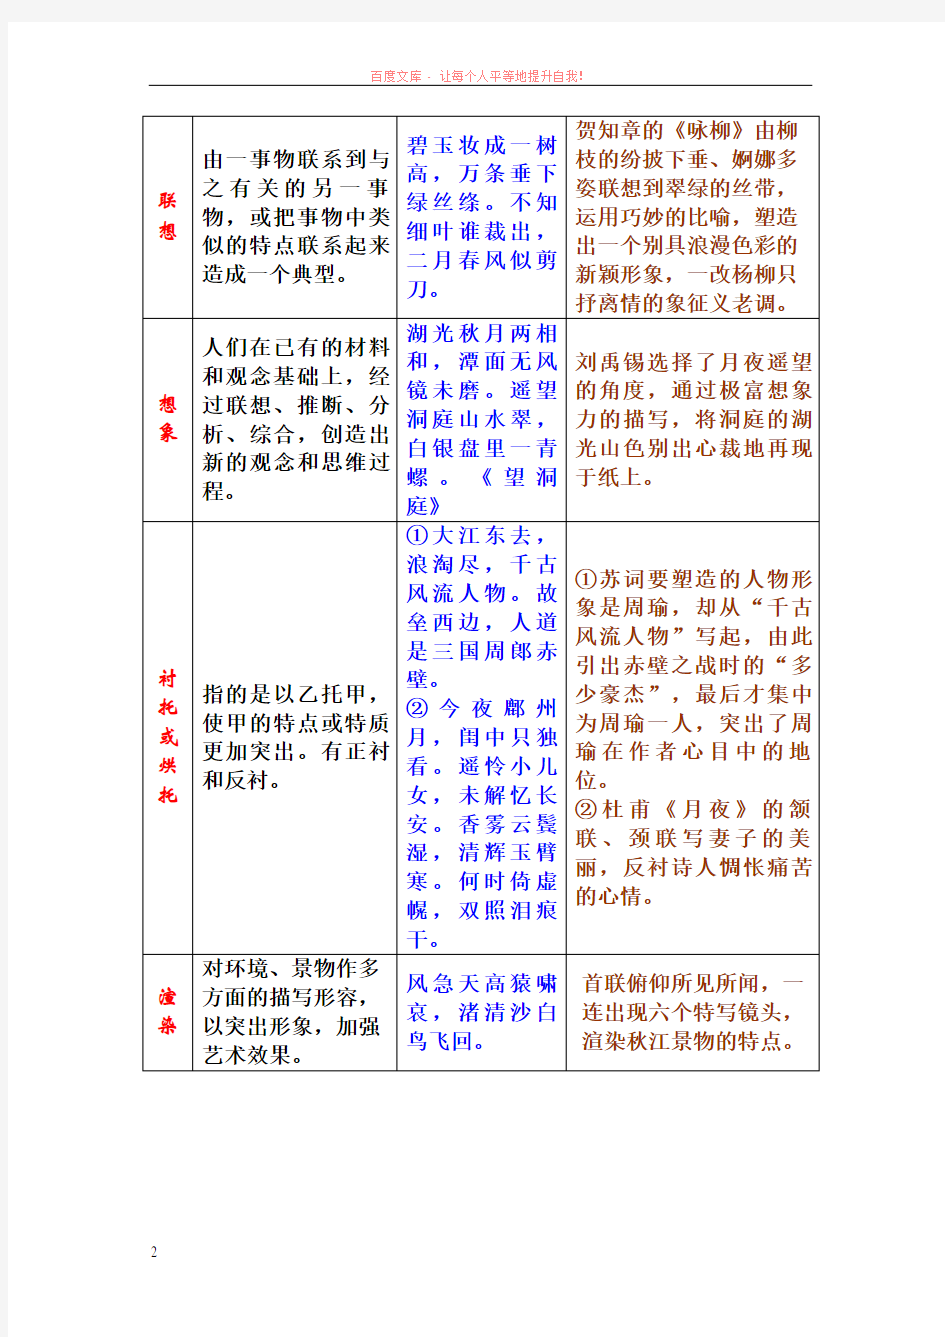 (俺的定稿)古诗鉴赏之表现手法、修辞手法、结构技巧 (1)